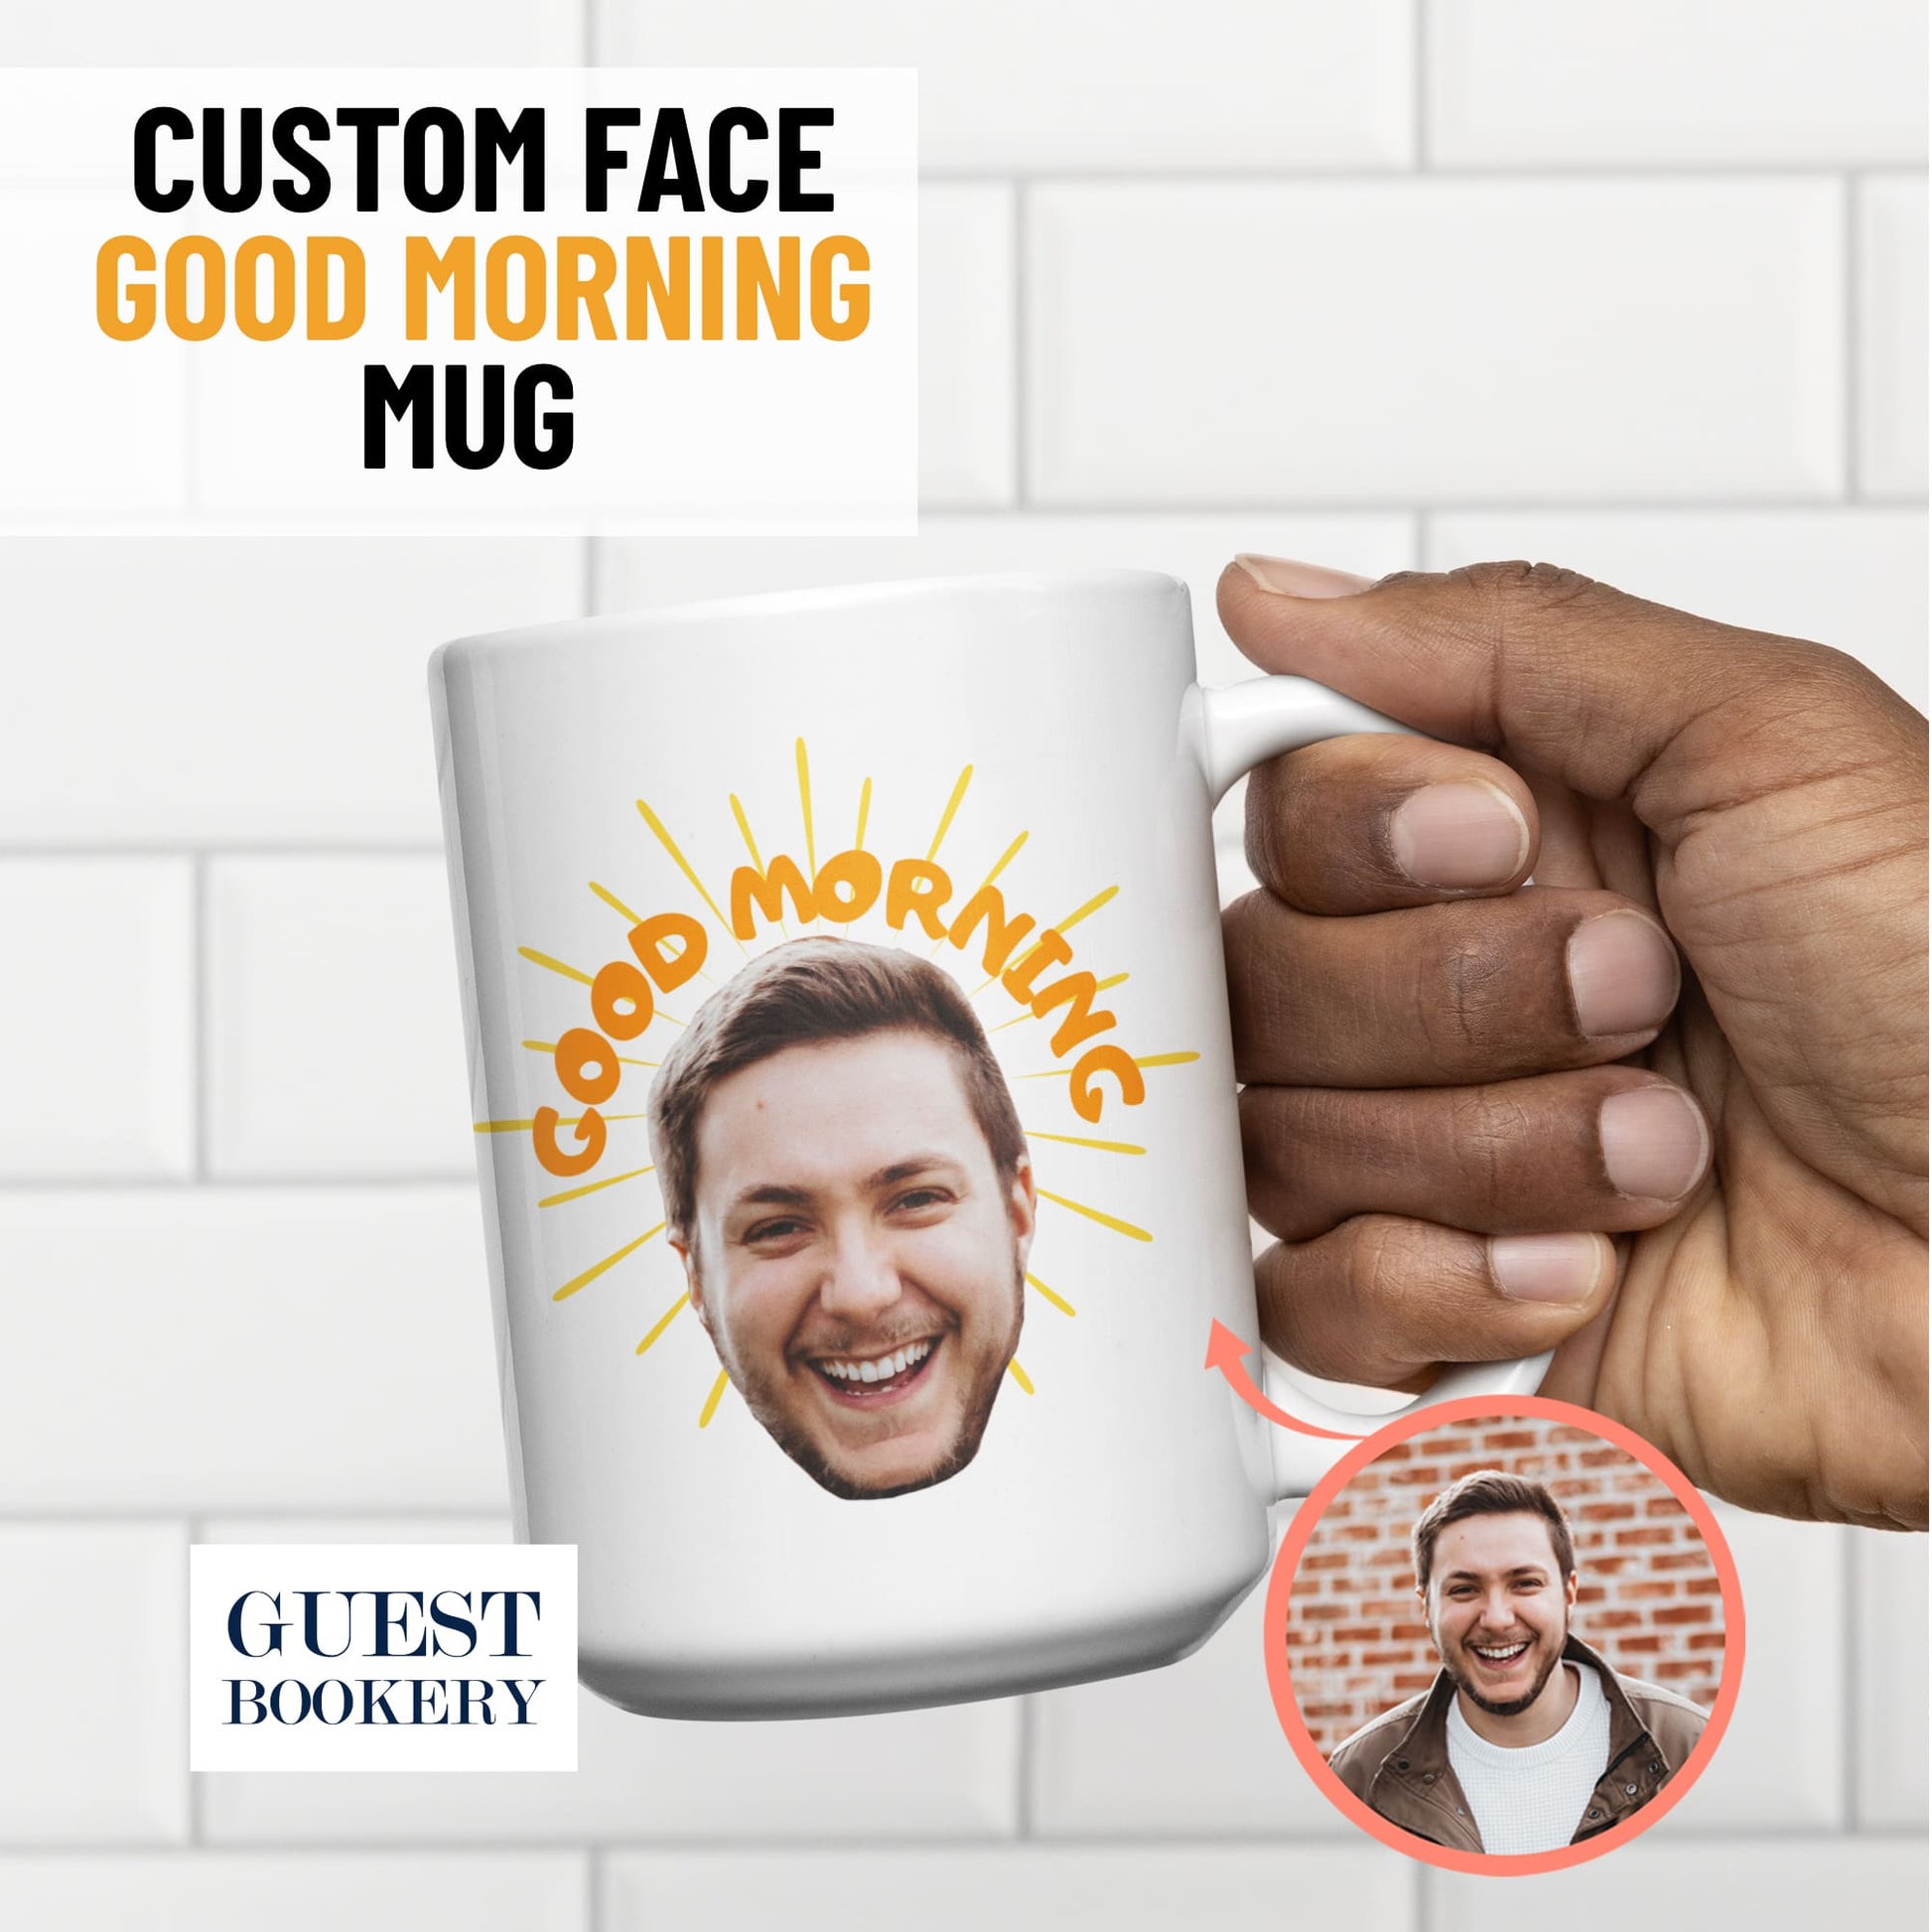 Custom Face Mug - Good Morning!